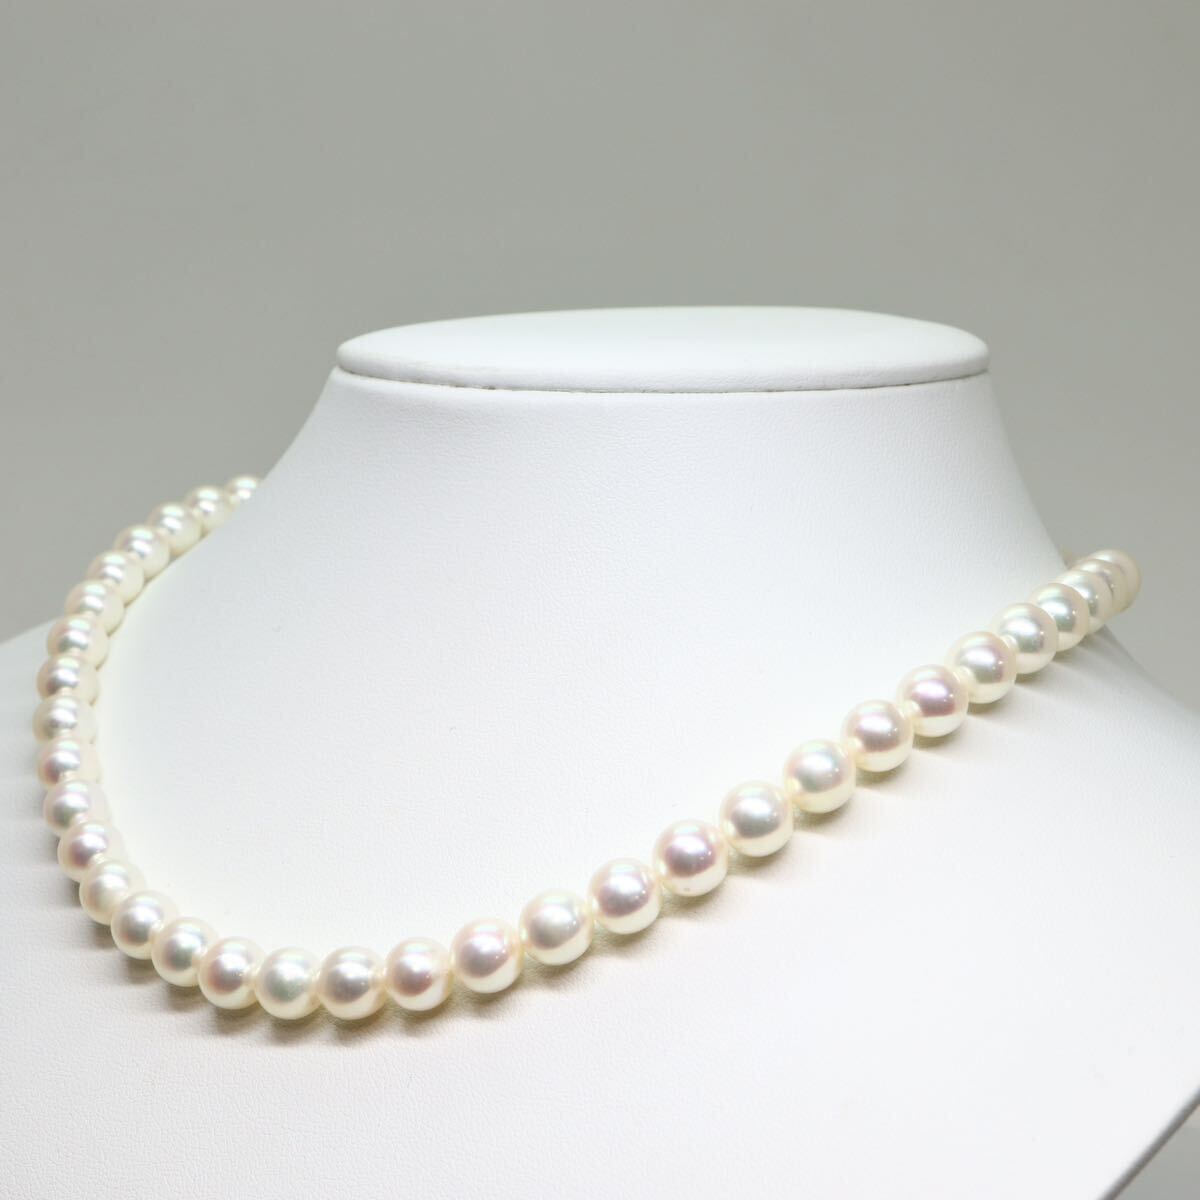 良質!!NINA RICCI(ニナリッチ)《アコヤ本真珠ネックレス》M 約7.5-8.0mm珠 38.0g 約42.5cm pearl necklace ジュエリー jewelry EF0/EF0の画像3